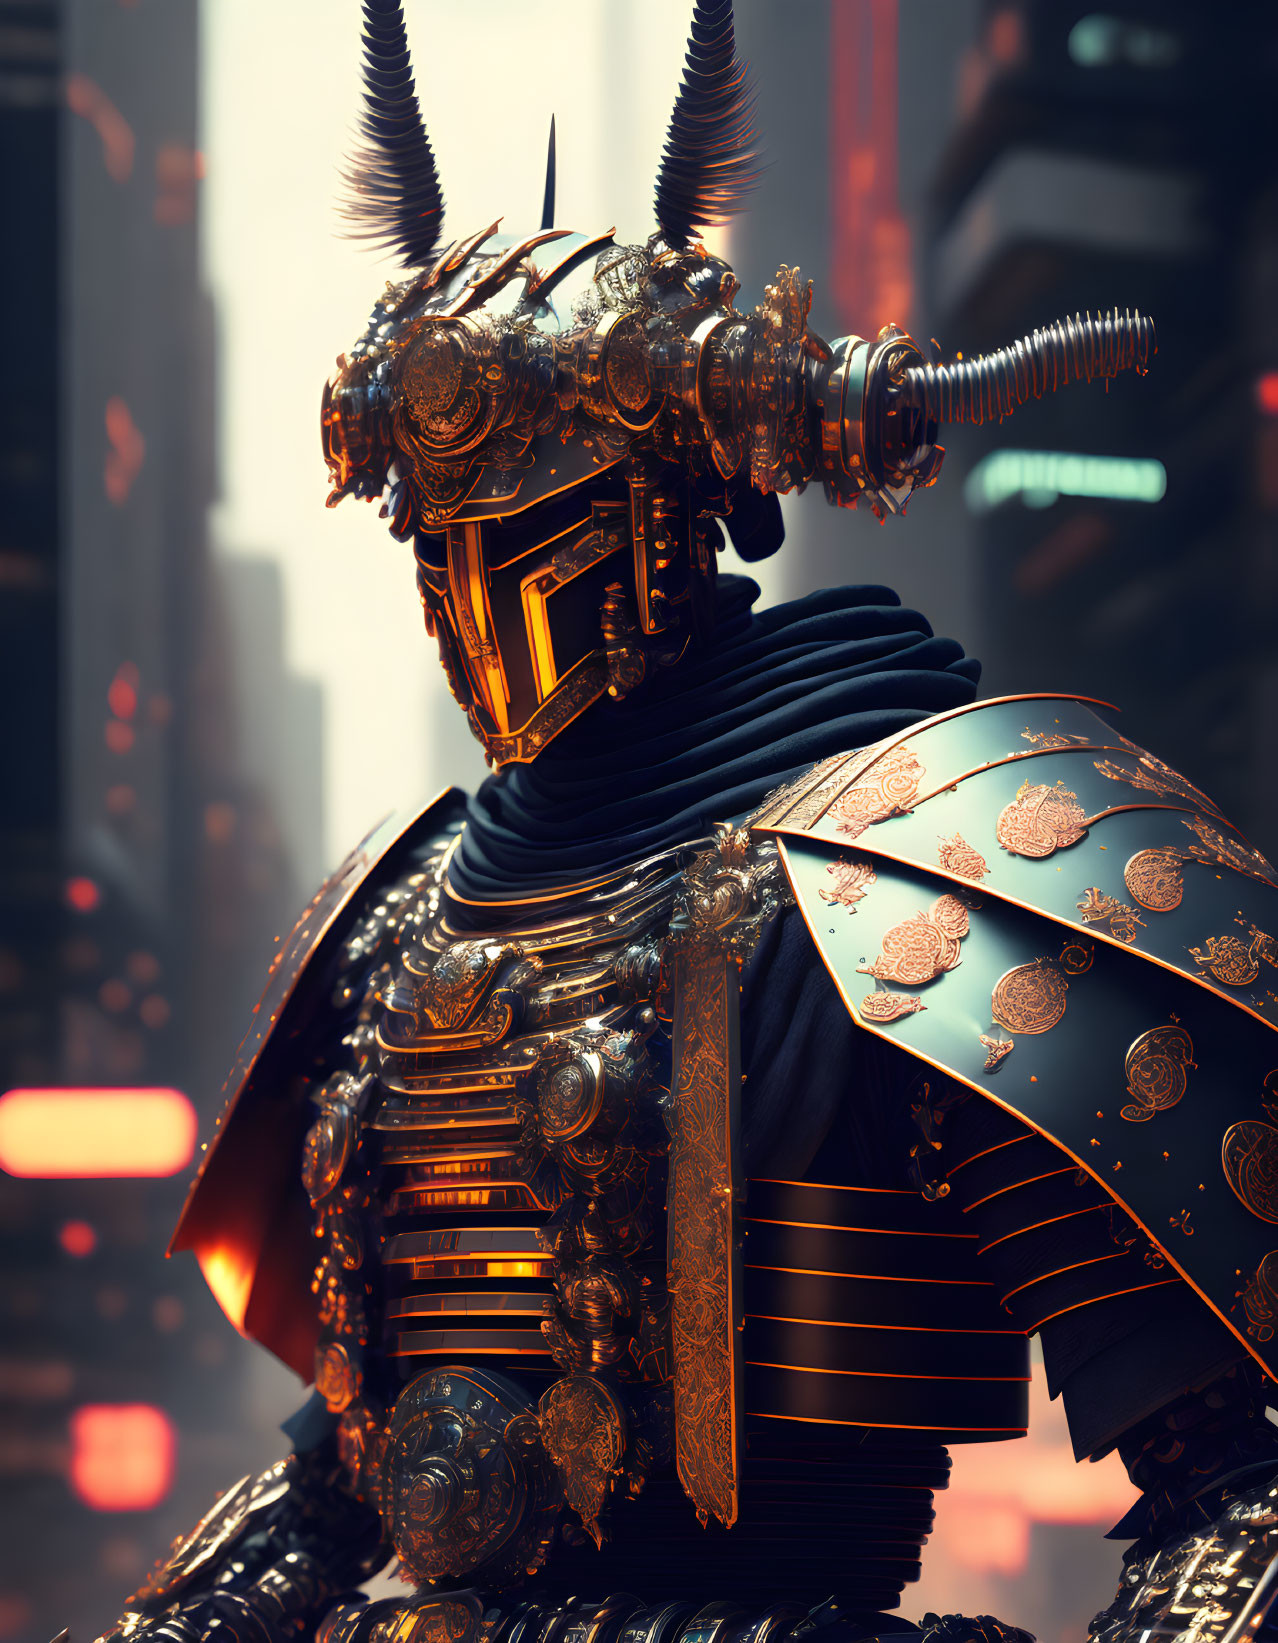 Futuristic samurai robot in intricate armor against neon cityscape